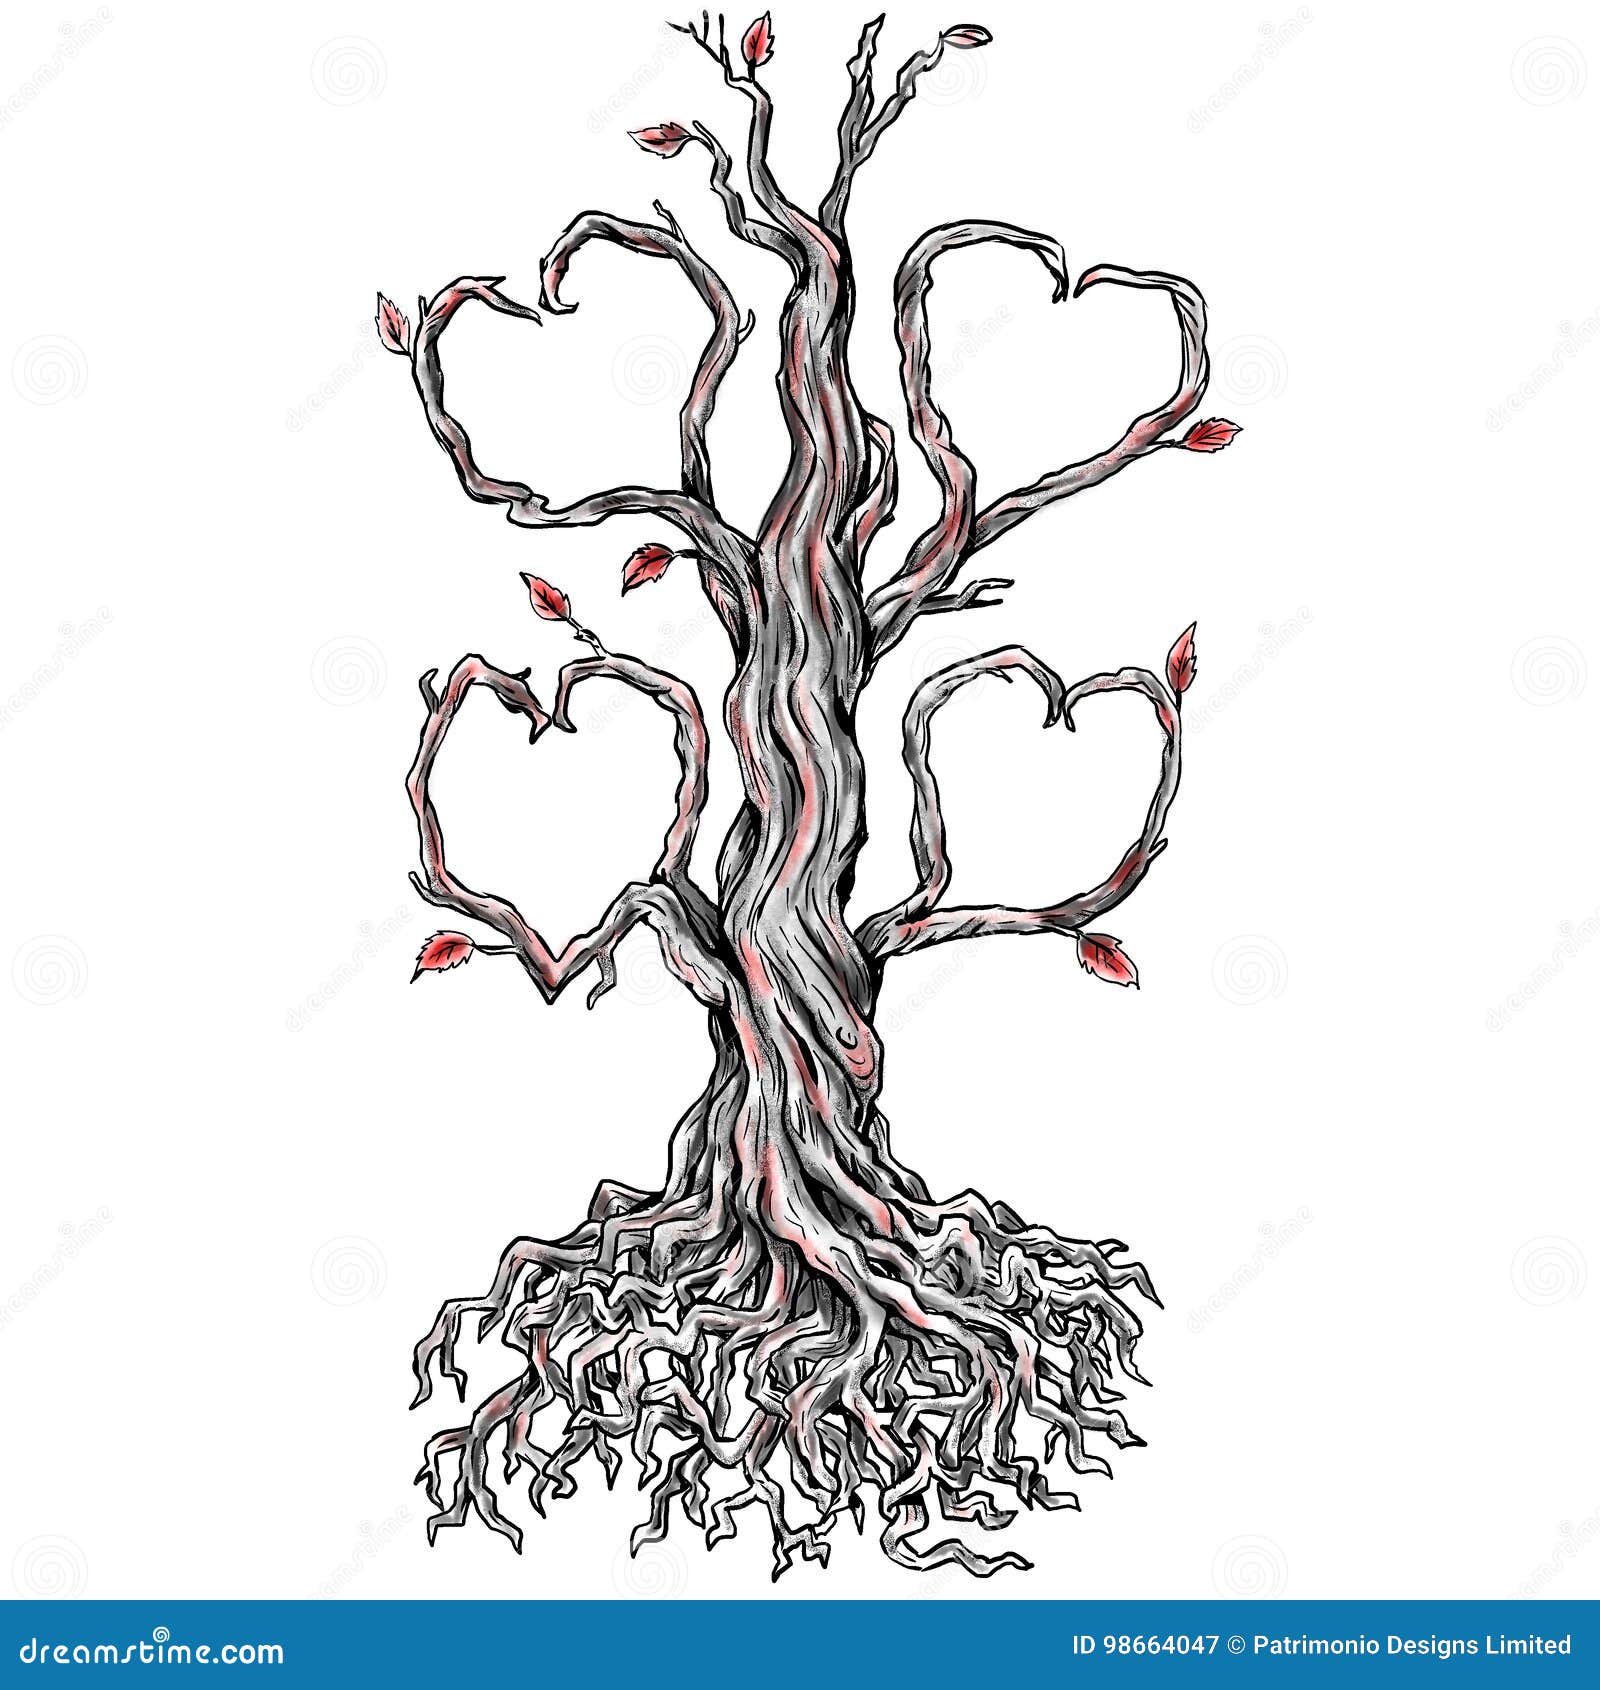 Tree Root Tattoo Bird Heart  Diseños Del Arbol De La Vida HD Png Download   Transparent Png Image  PNGitem